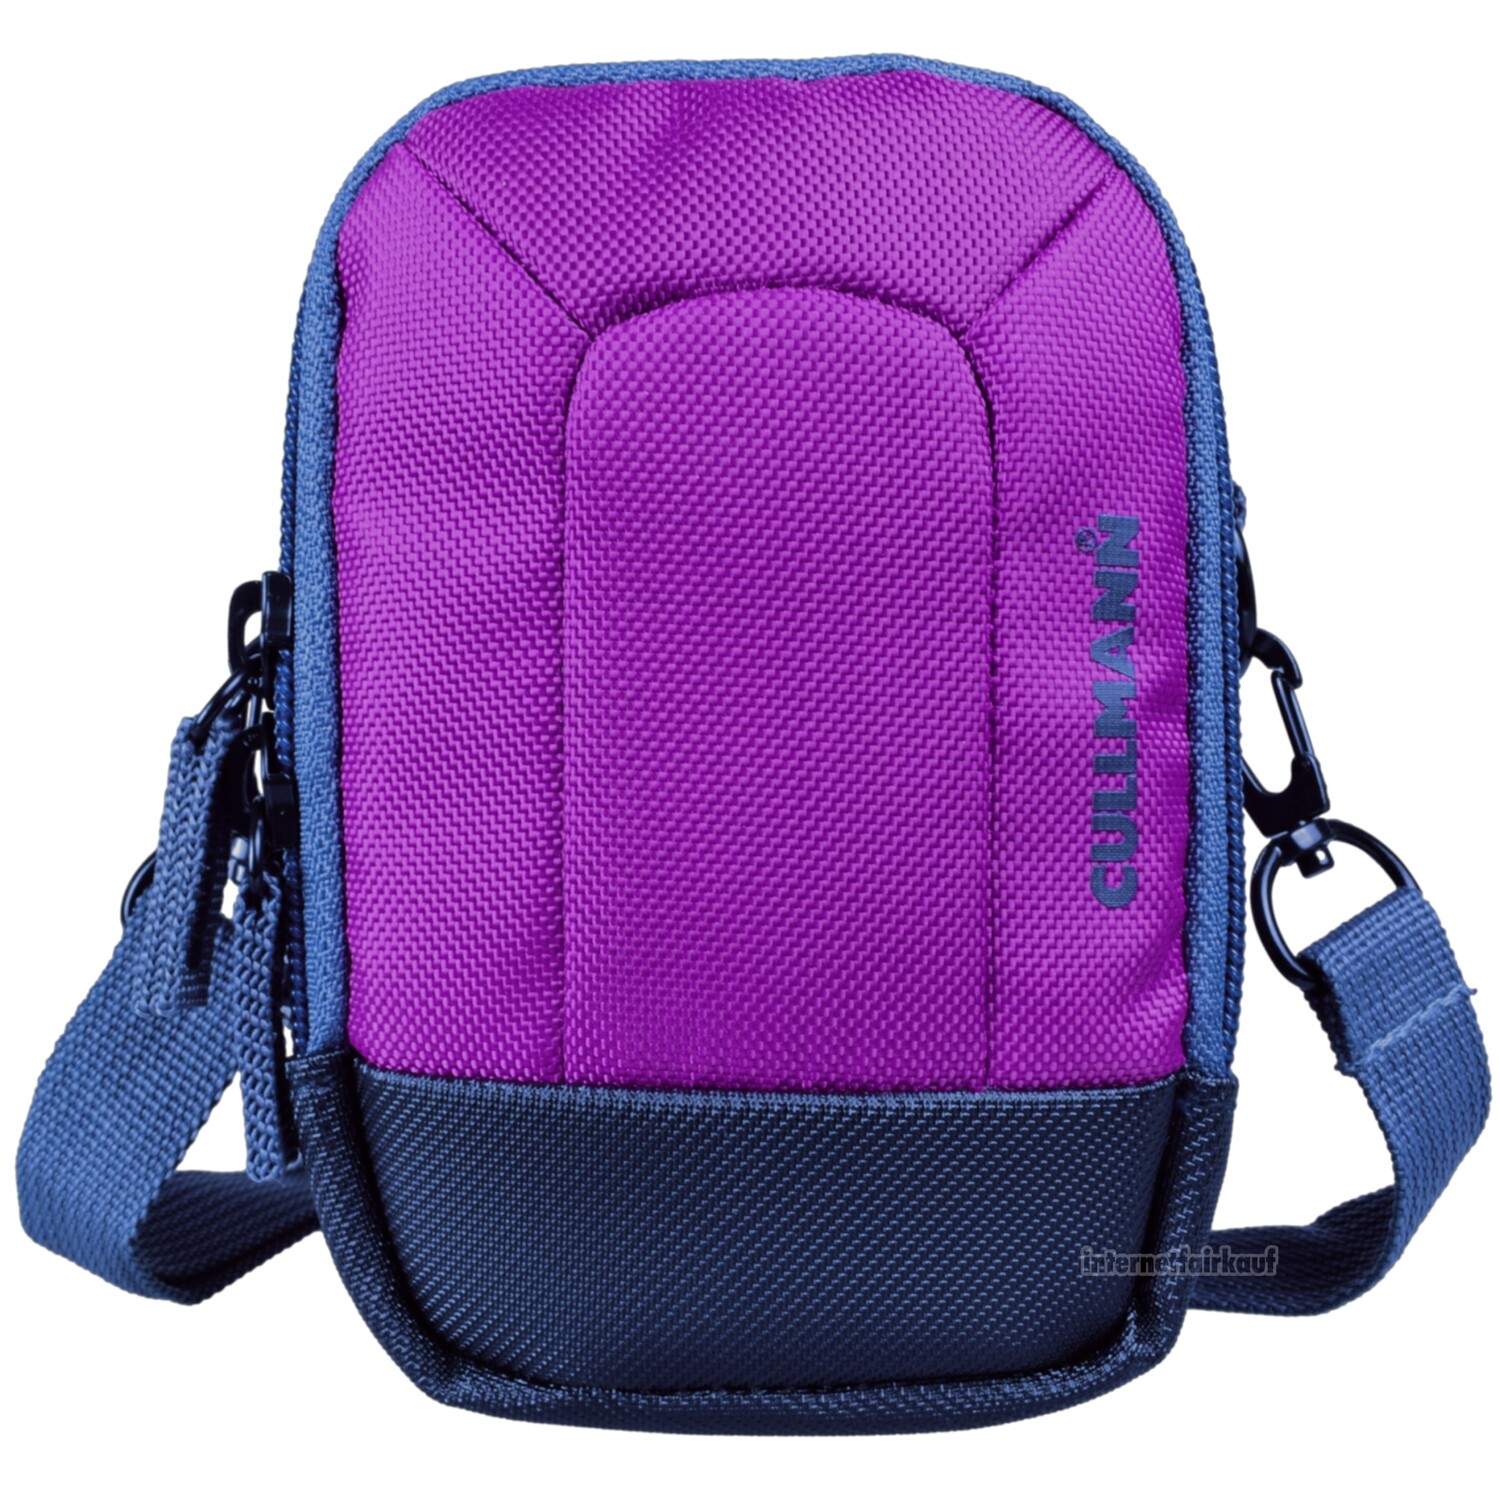 Kameratasche purple passend für Canon PowerShot SX730 HS - Fototasche